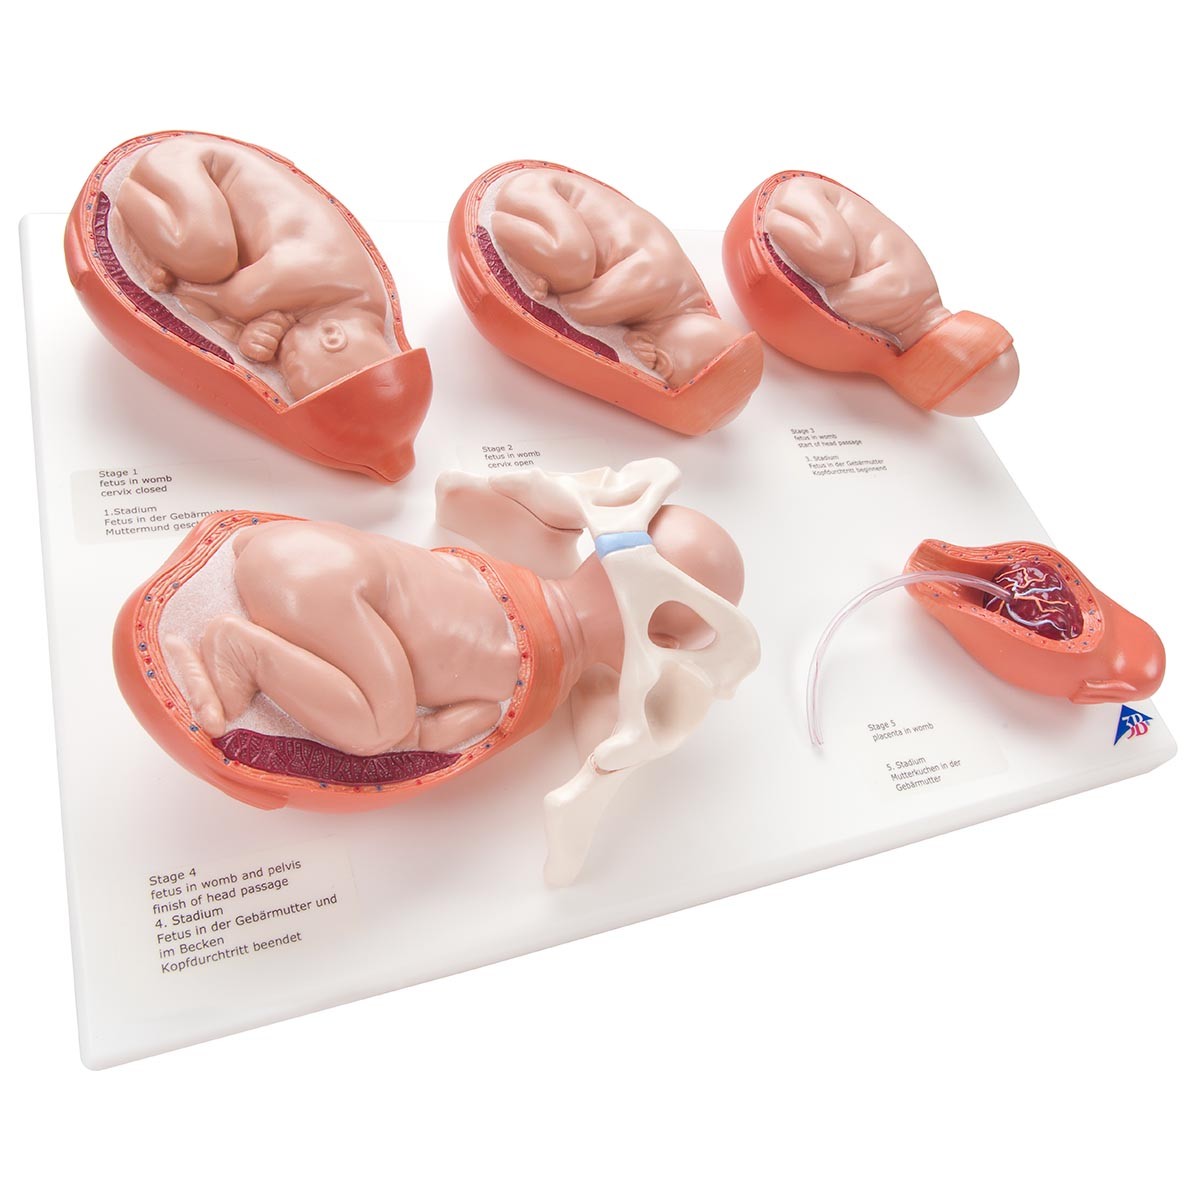 5 stades de l'accouchement modèles sur planche PVC